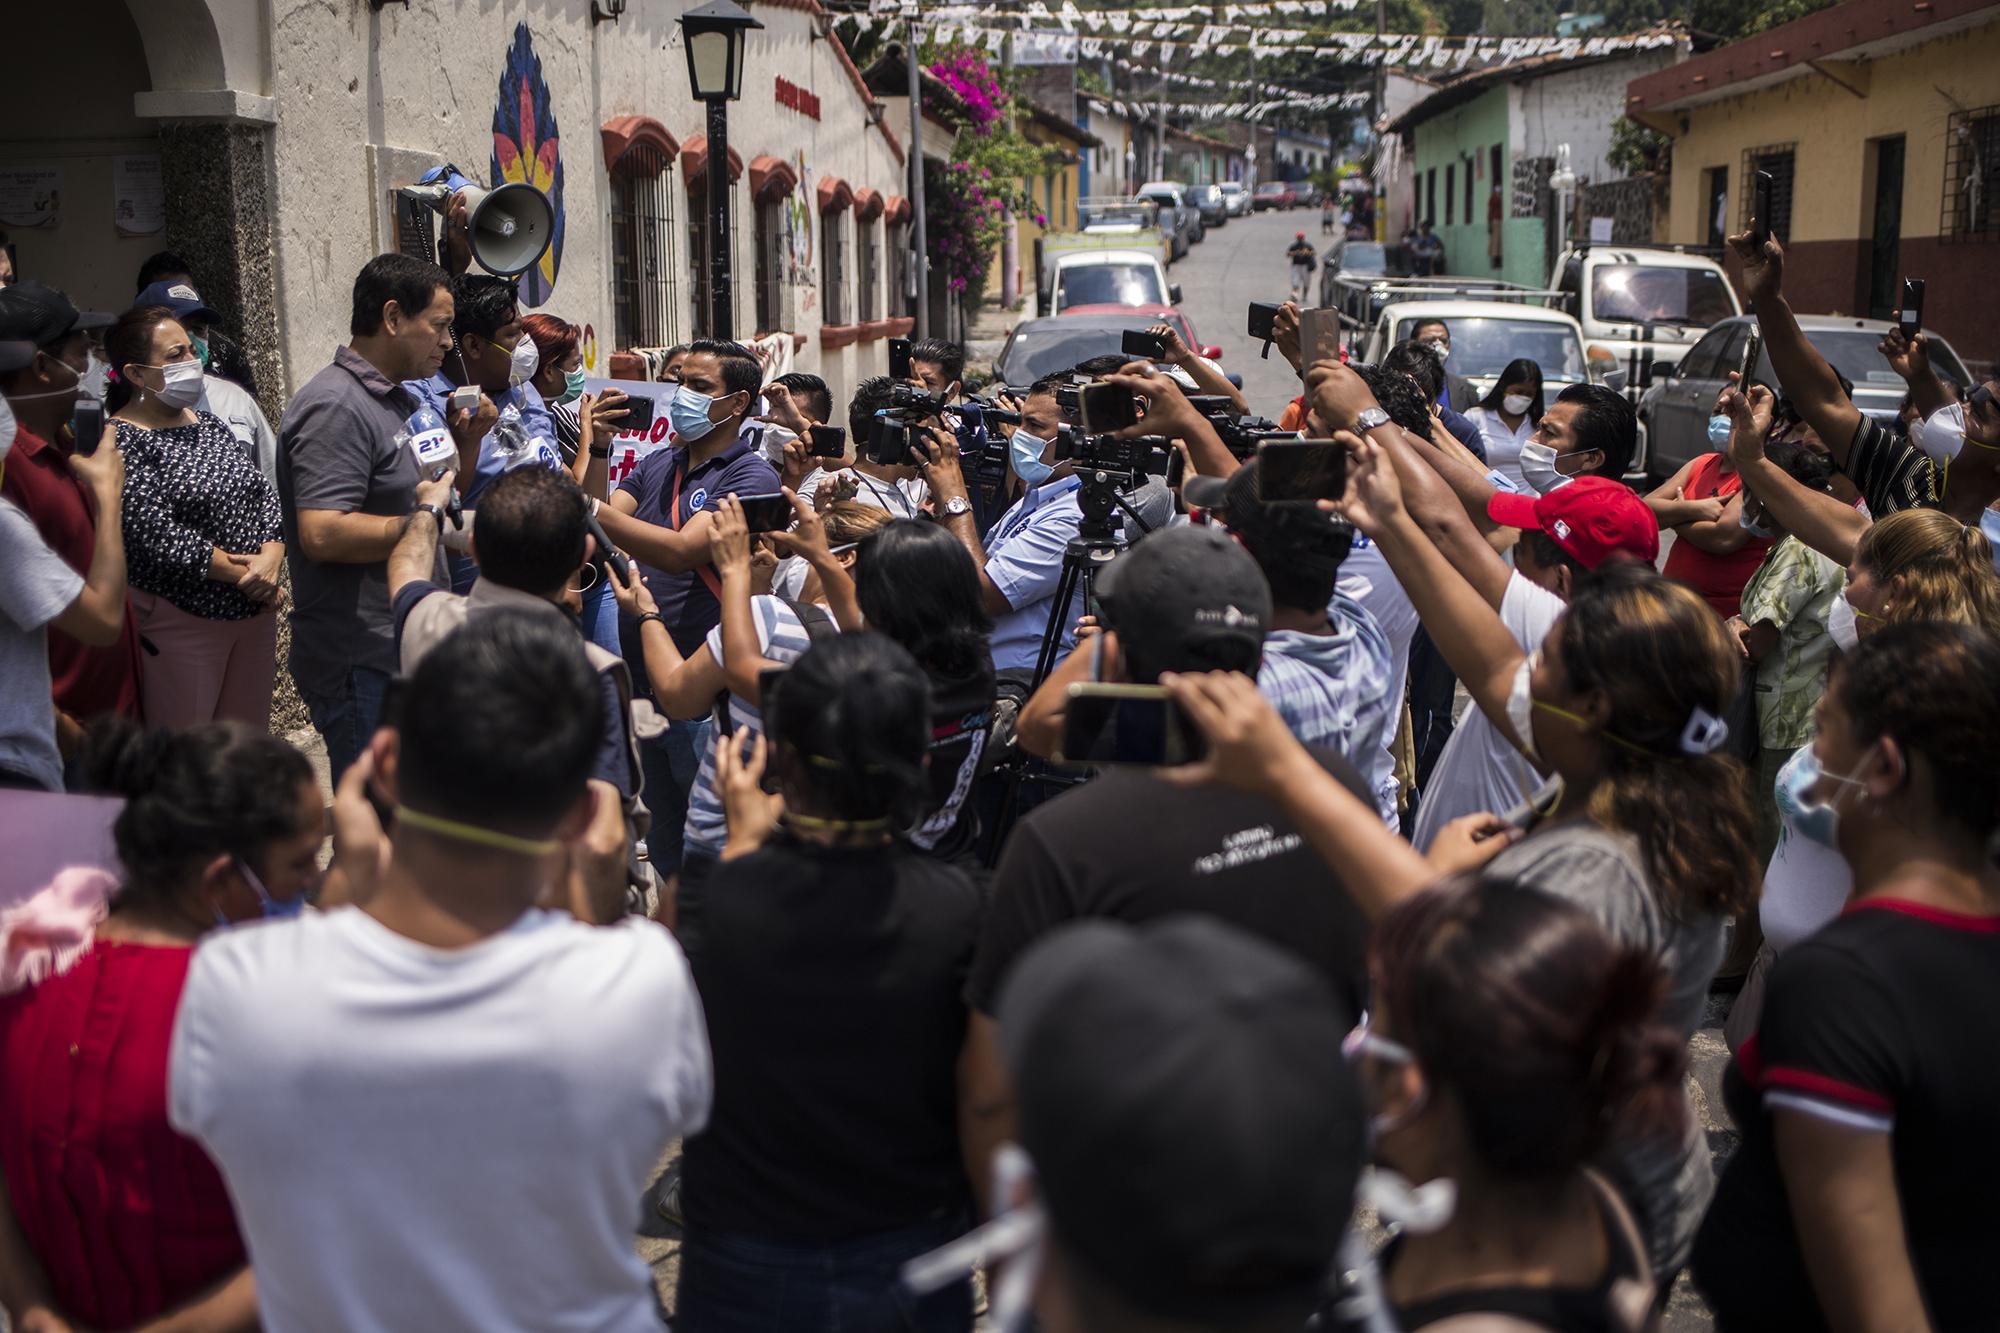 Unas 50 personas, muchos de ellos empleados municipales, se juntaron frente a la alcaldía de Panchimalco para celebrar, con consignas y pólvora, la liberación del alcalde Mario Meléndez, el 19 de abril. Las concentraciones están prohibidas en El Salvador desde que inició la pandemia por Covid-19. Foto: Víctor Peña